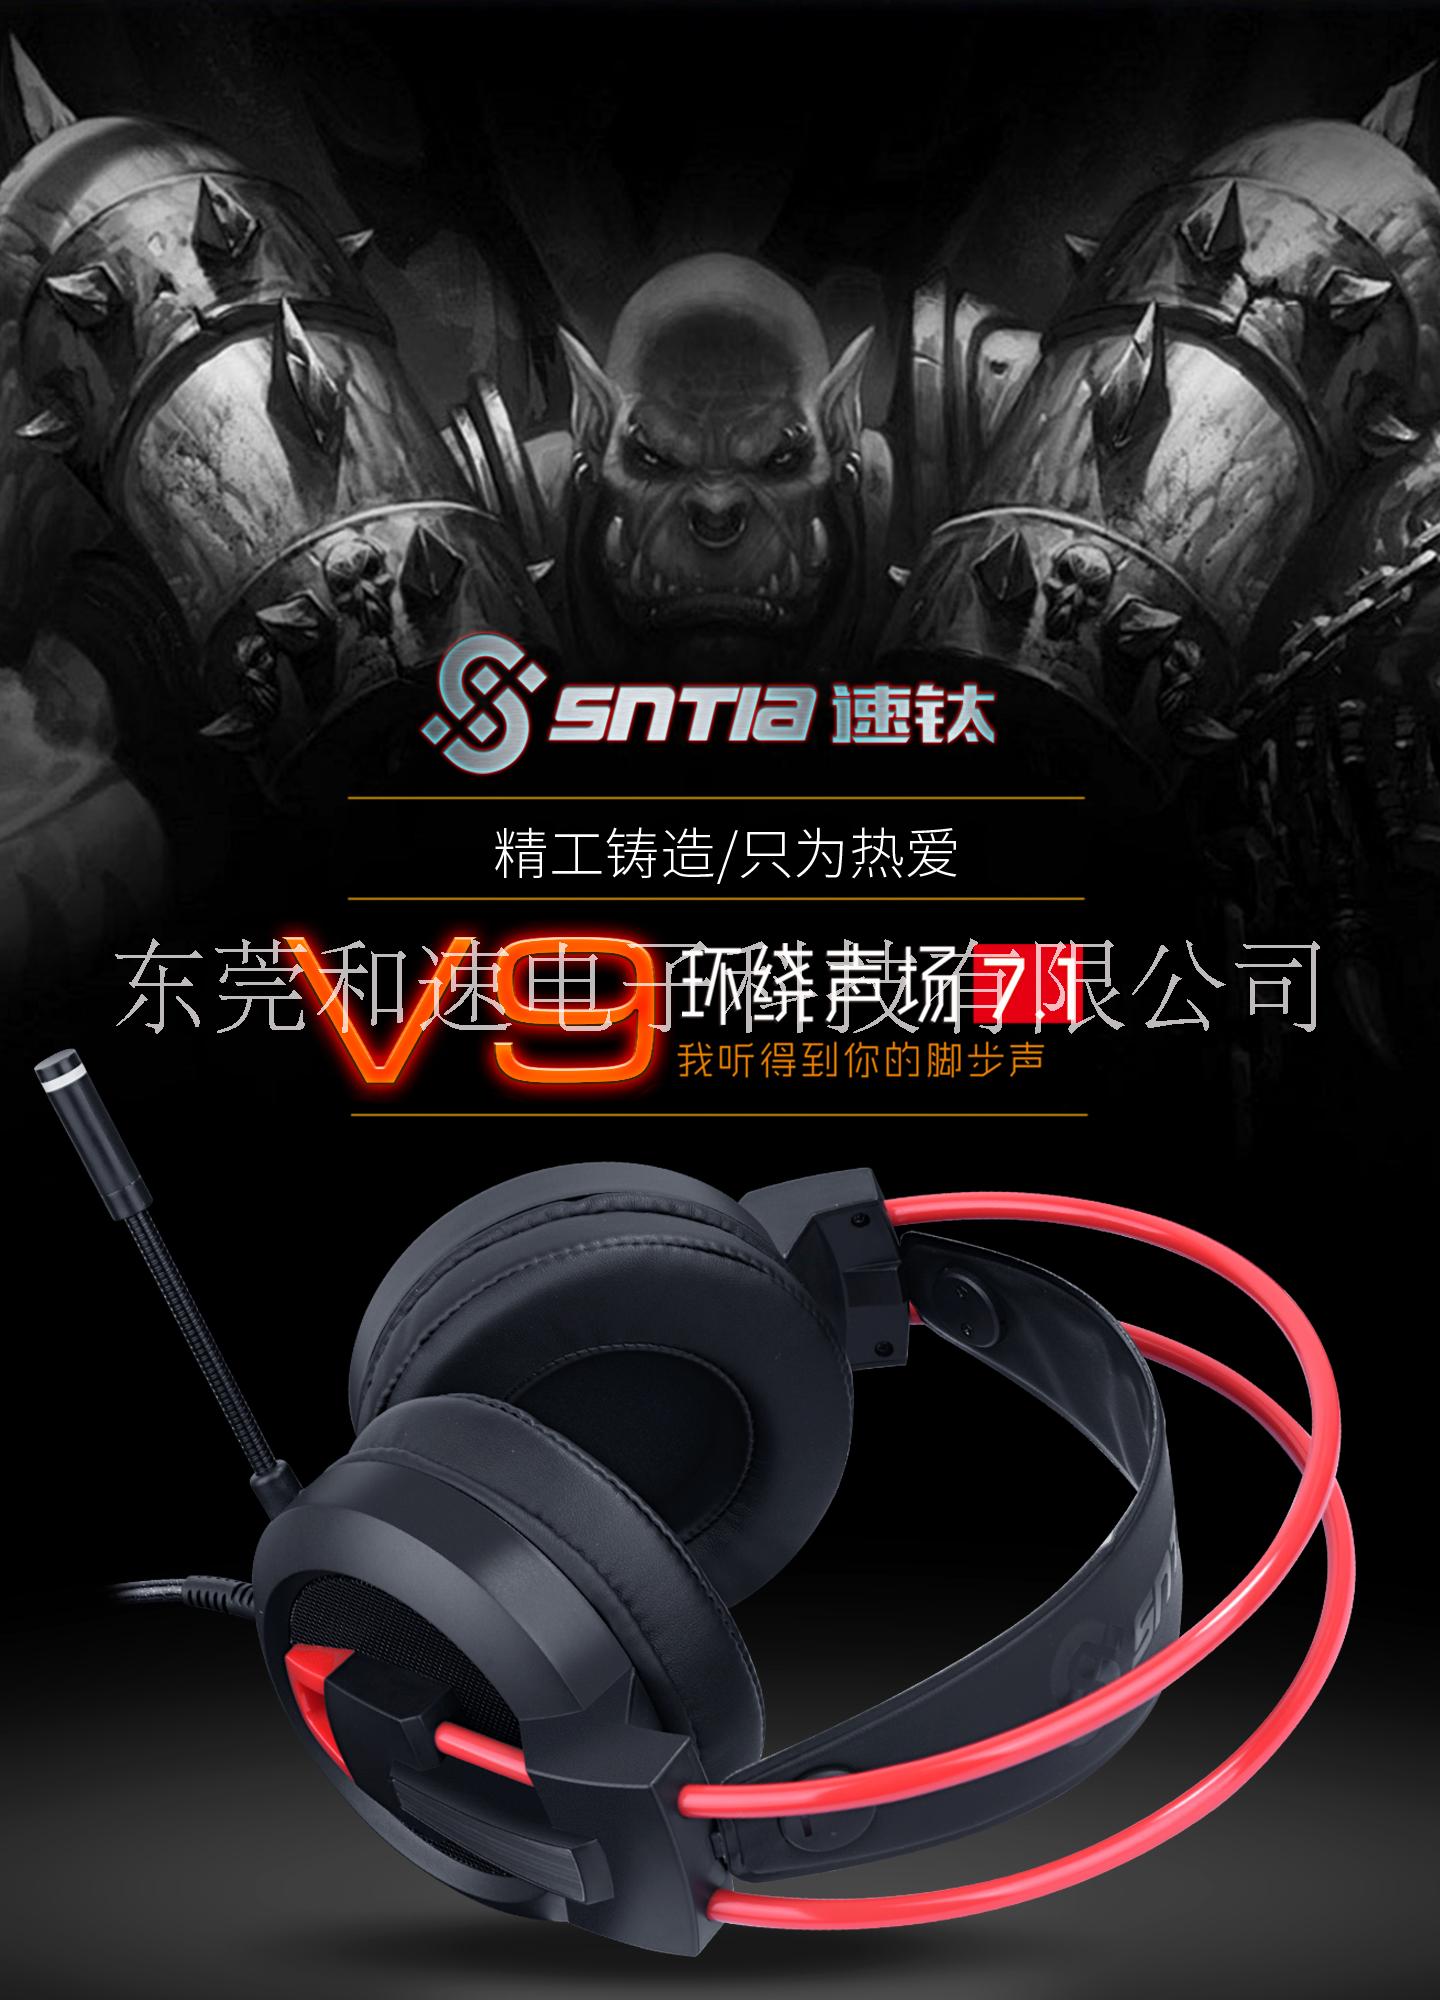 东莞市速钛V9网吧电竞游戏耳机厂家